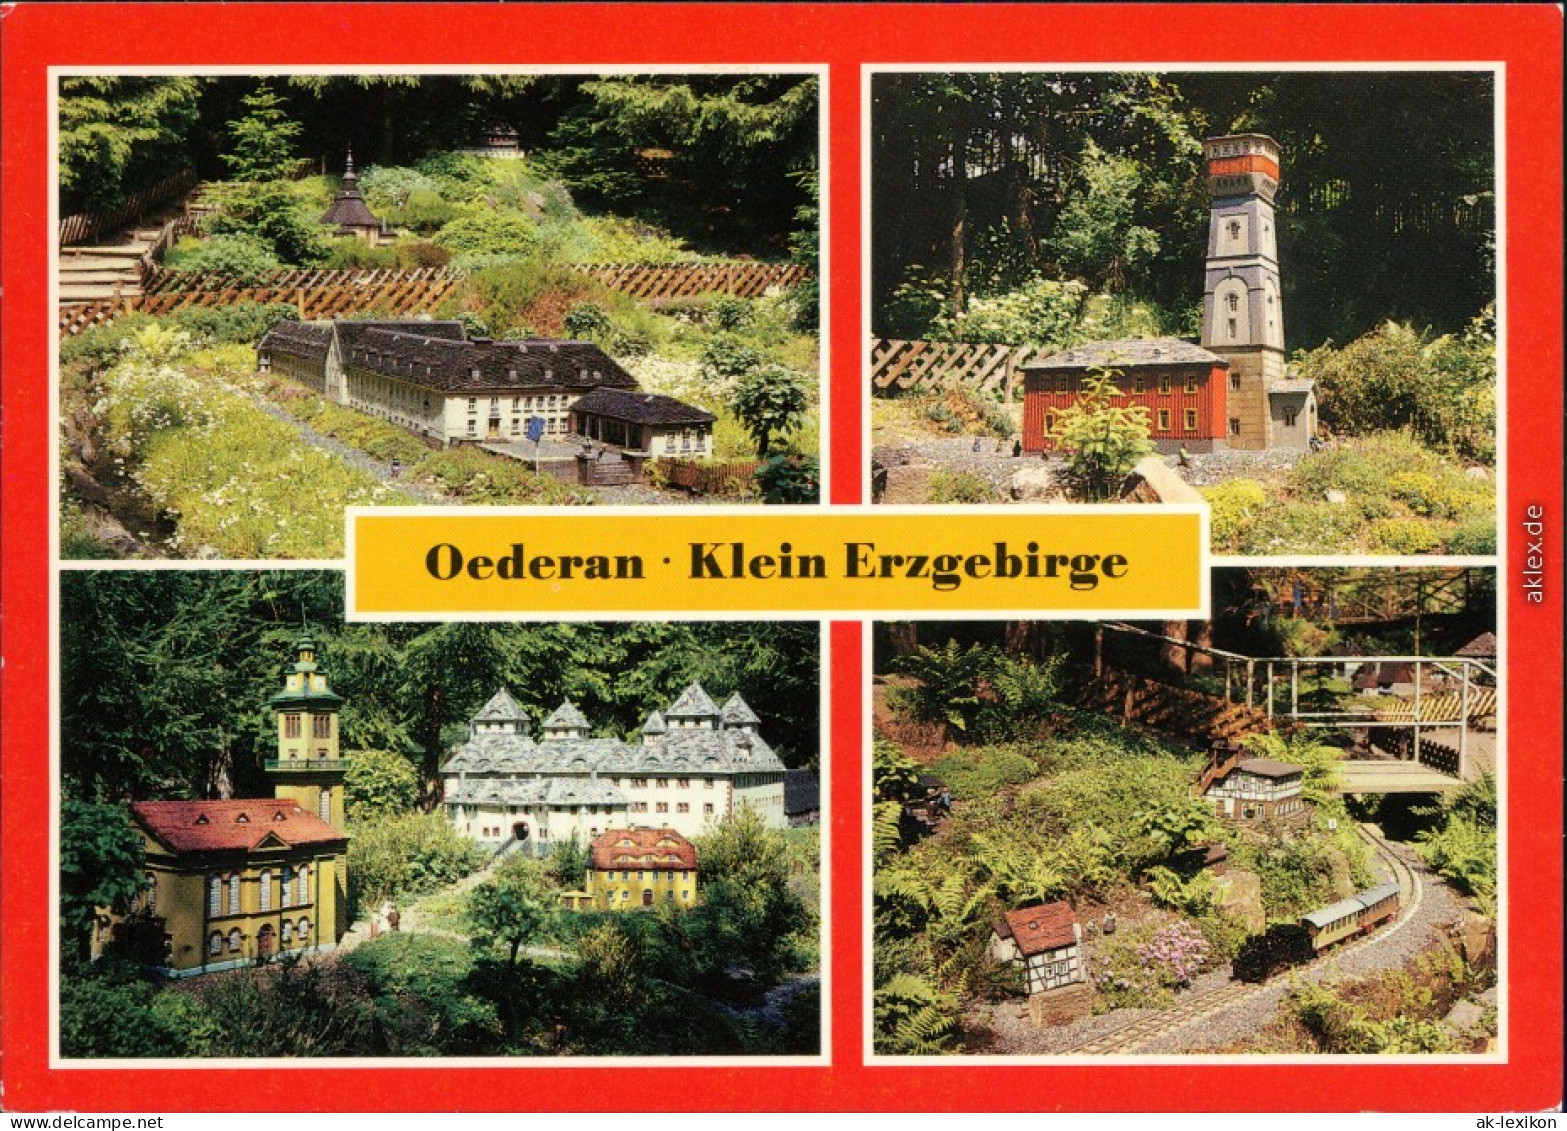 Oederan Miniaturpark Klein-Erzgebirge - Lehrkombinat  Ausflugsgaststätte   1988 - Oederan